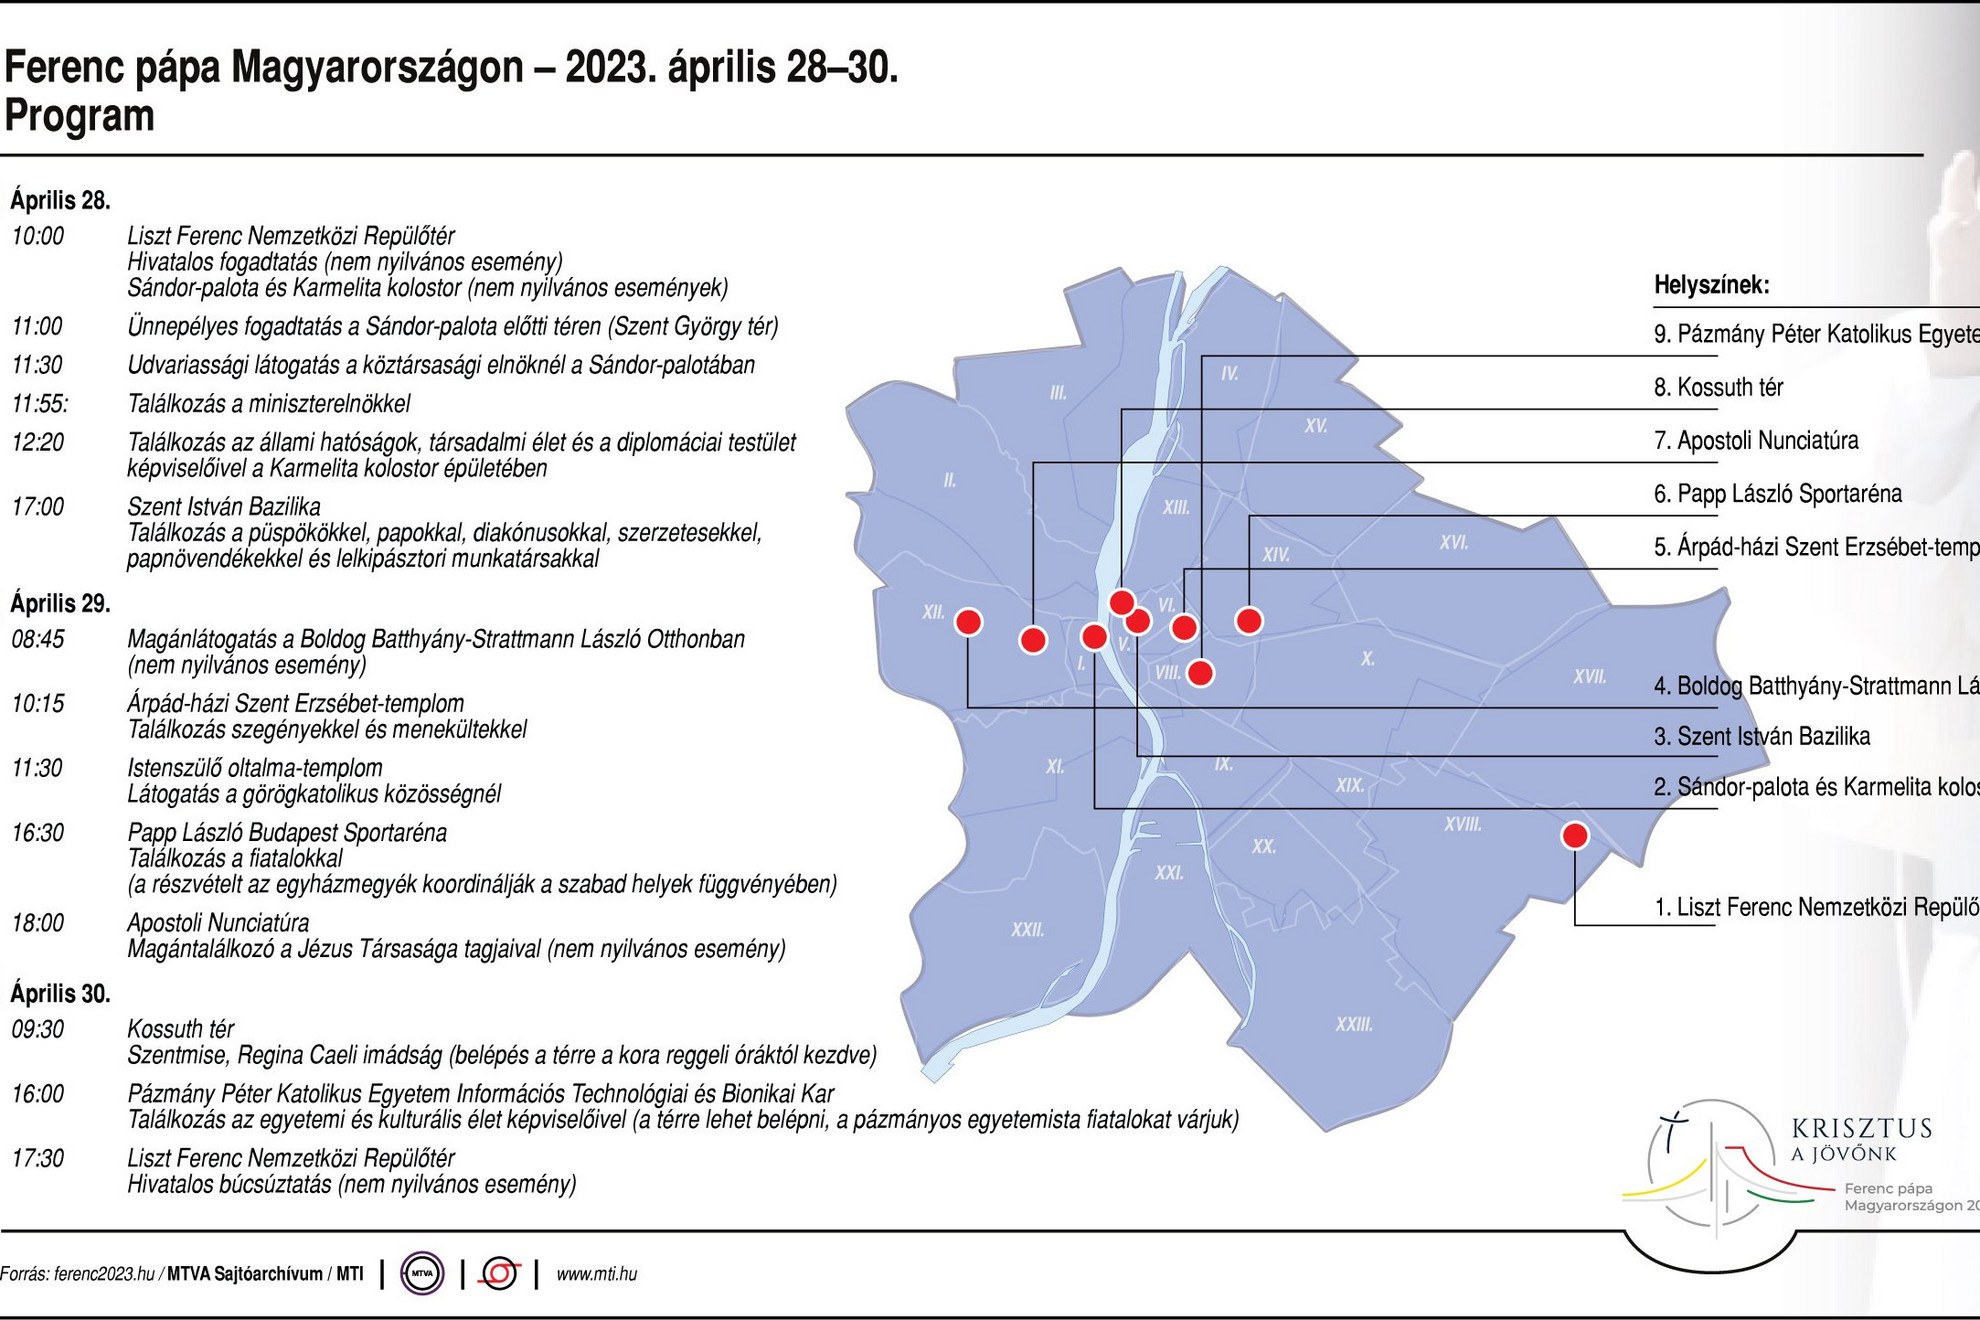 Ferenc pápa Magyarországon - 2023. április 28-30. Program; helyszínek helyszínek